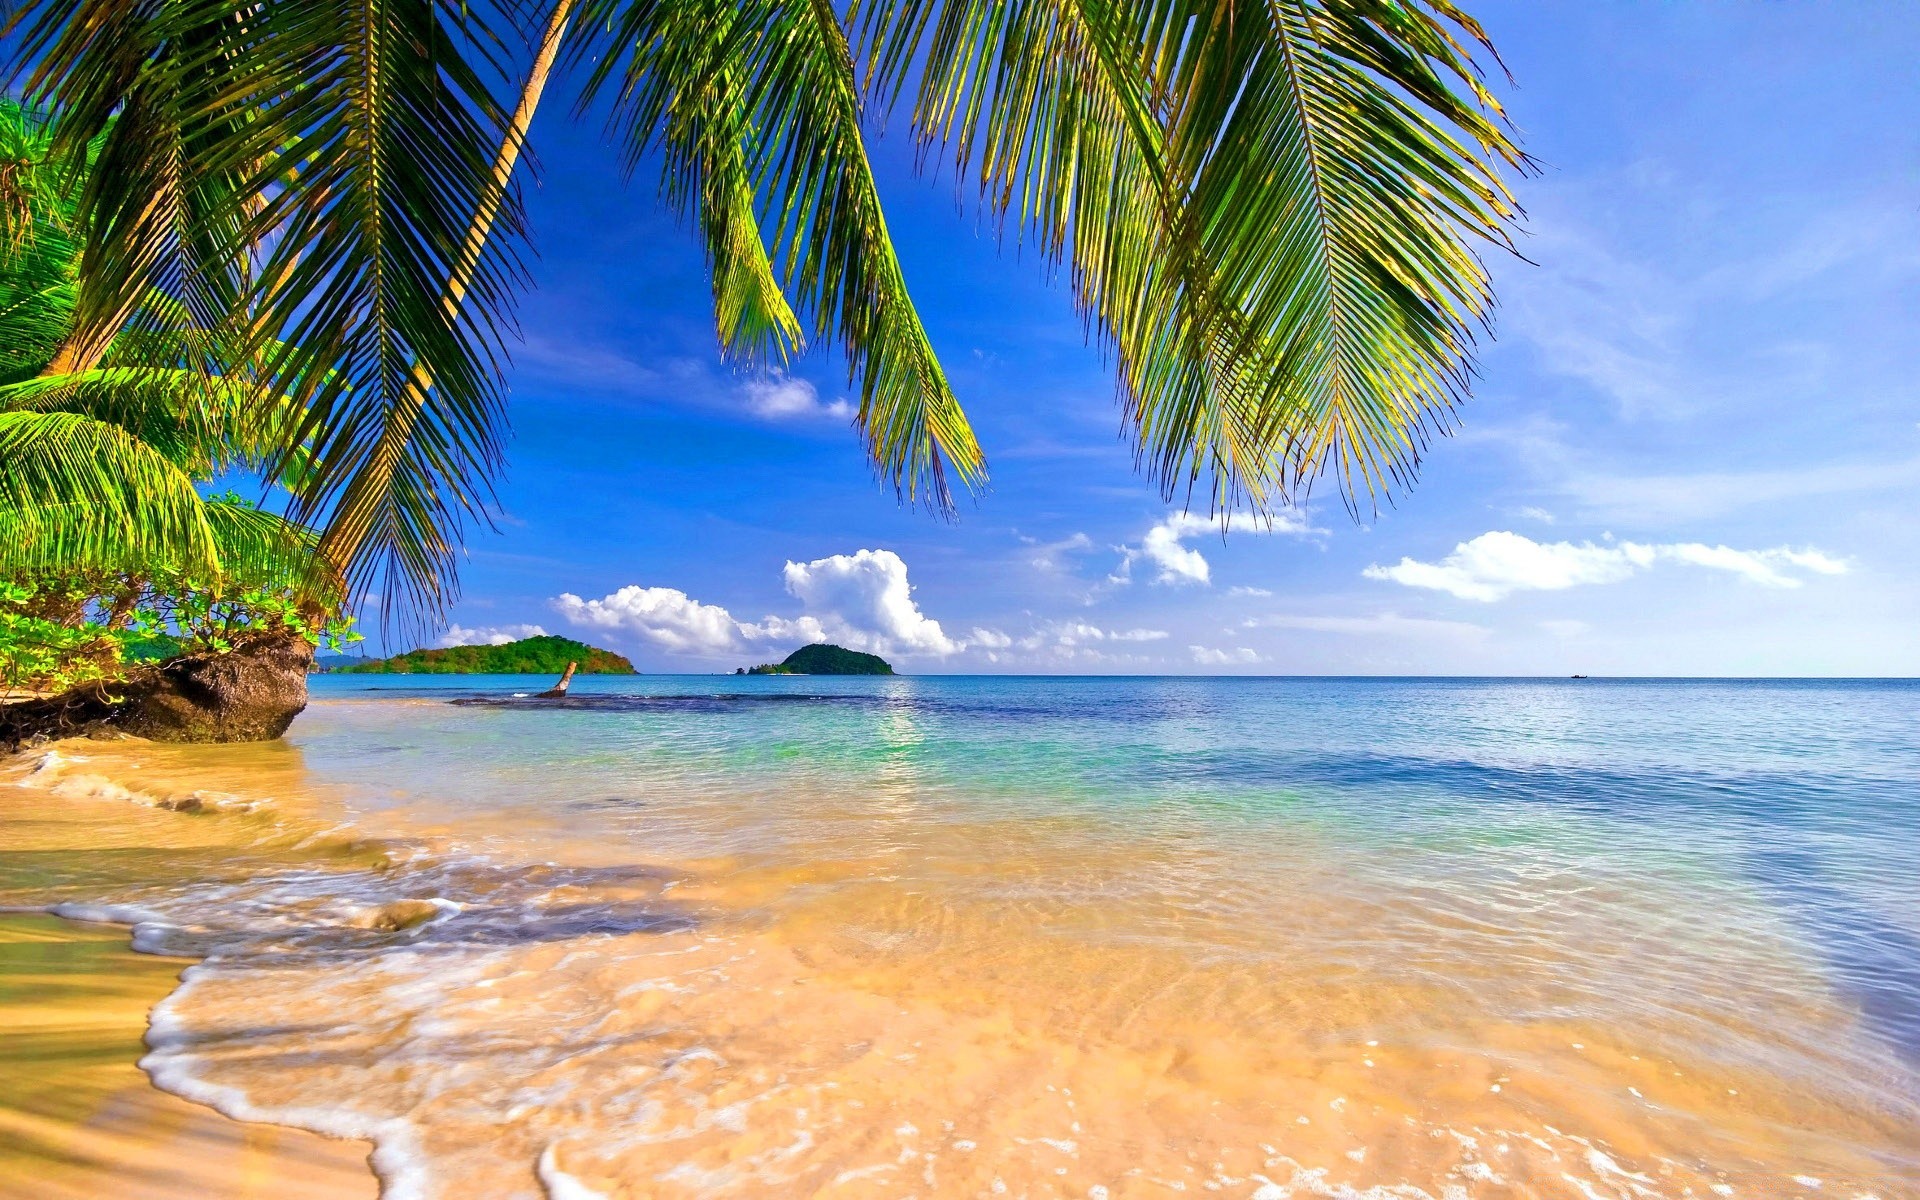 острова тропический пляж песок моря лето воды океан путешествия рай ладони отпуск остров экзотические пейзаж идиллия солнце релаксация кокосовое курорт